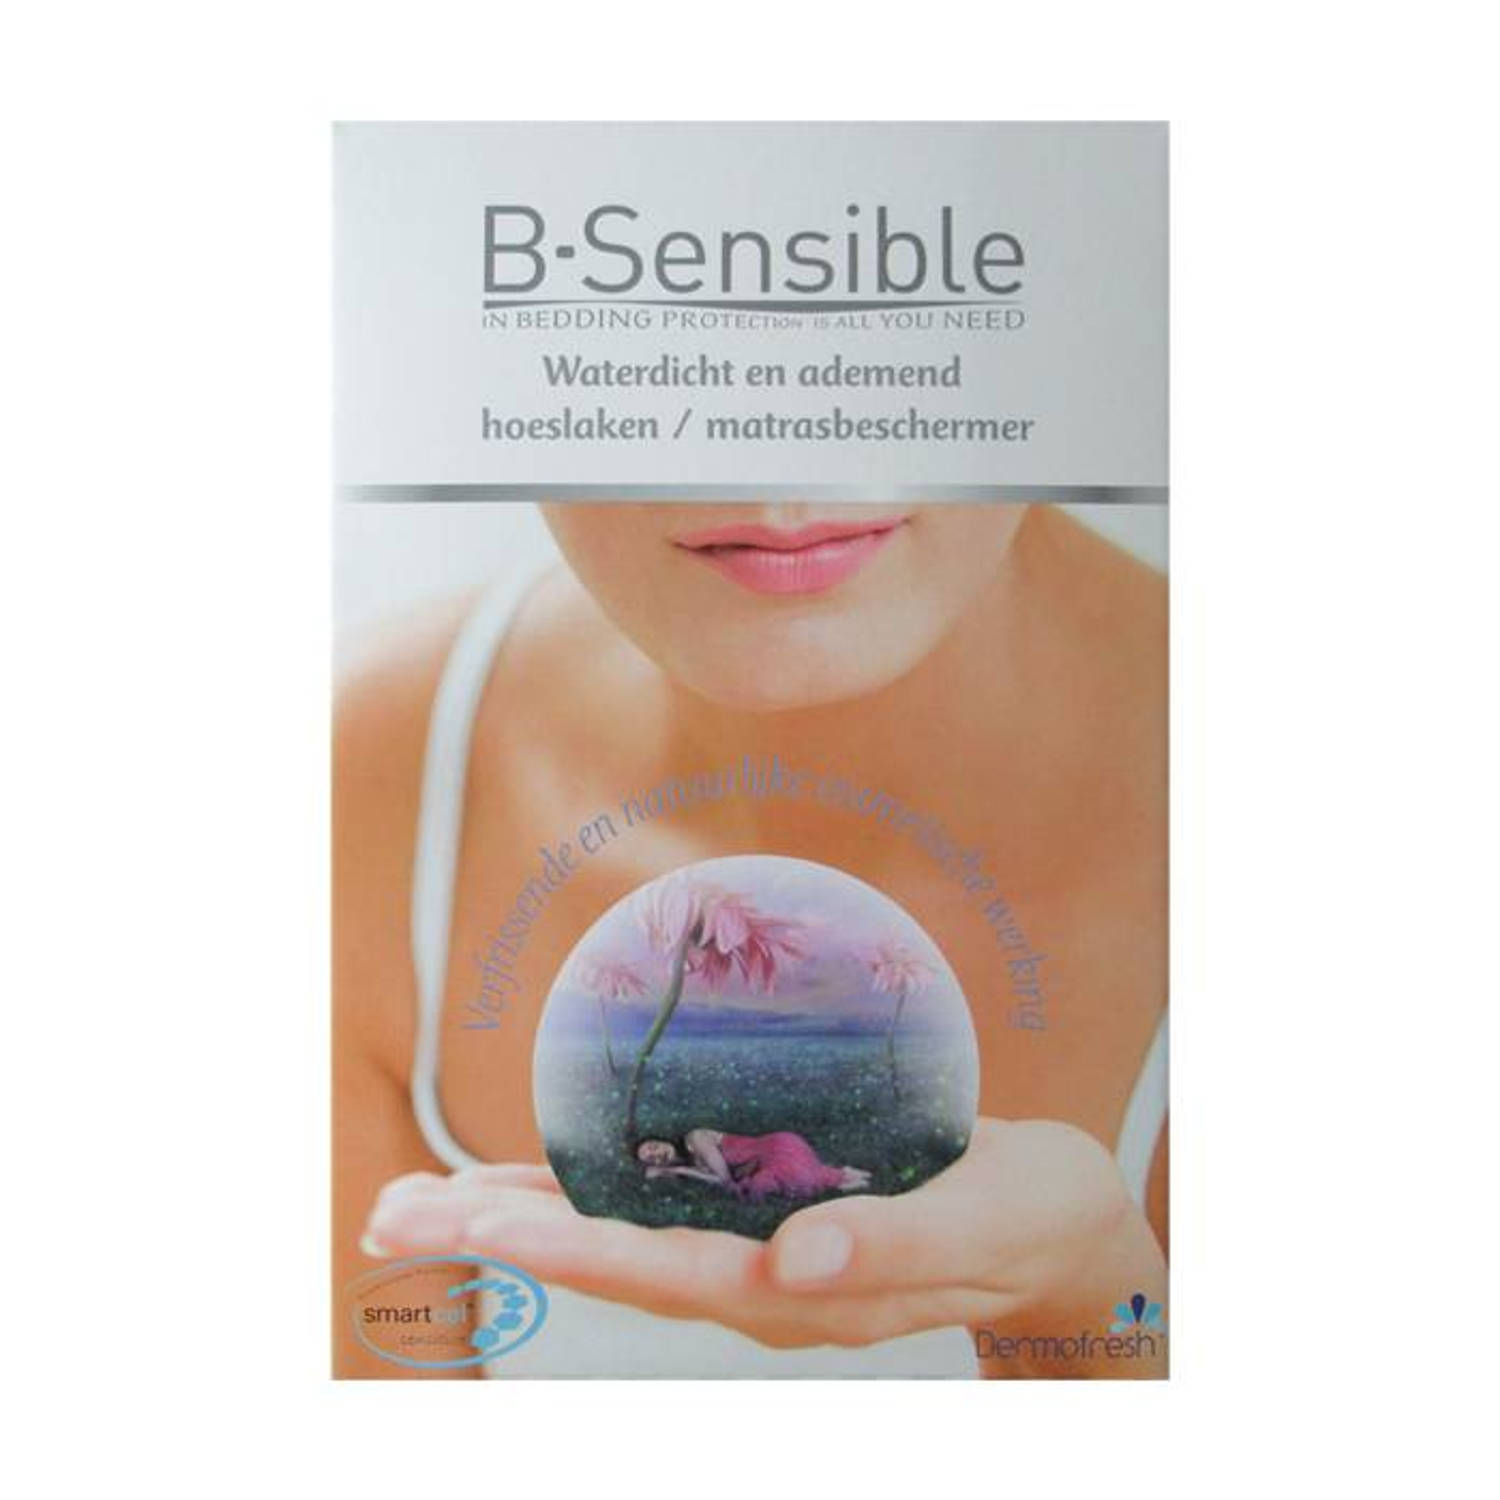 B-Sensible 2 in 1 waterdicht & ademend hoeslaken + matrasbeschermer Wit 180x200